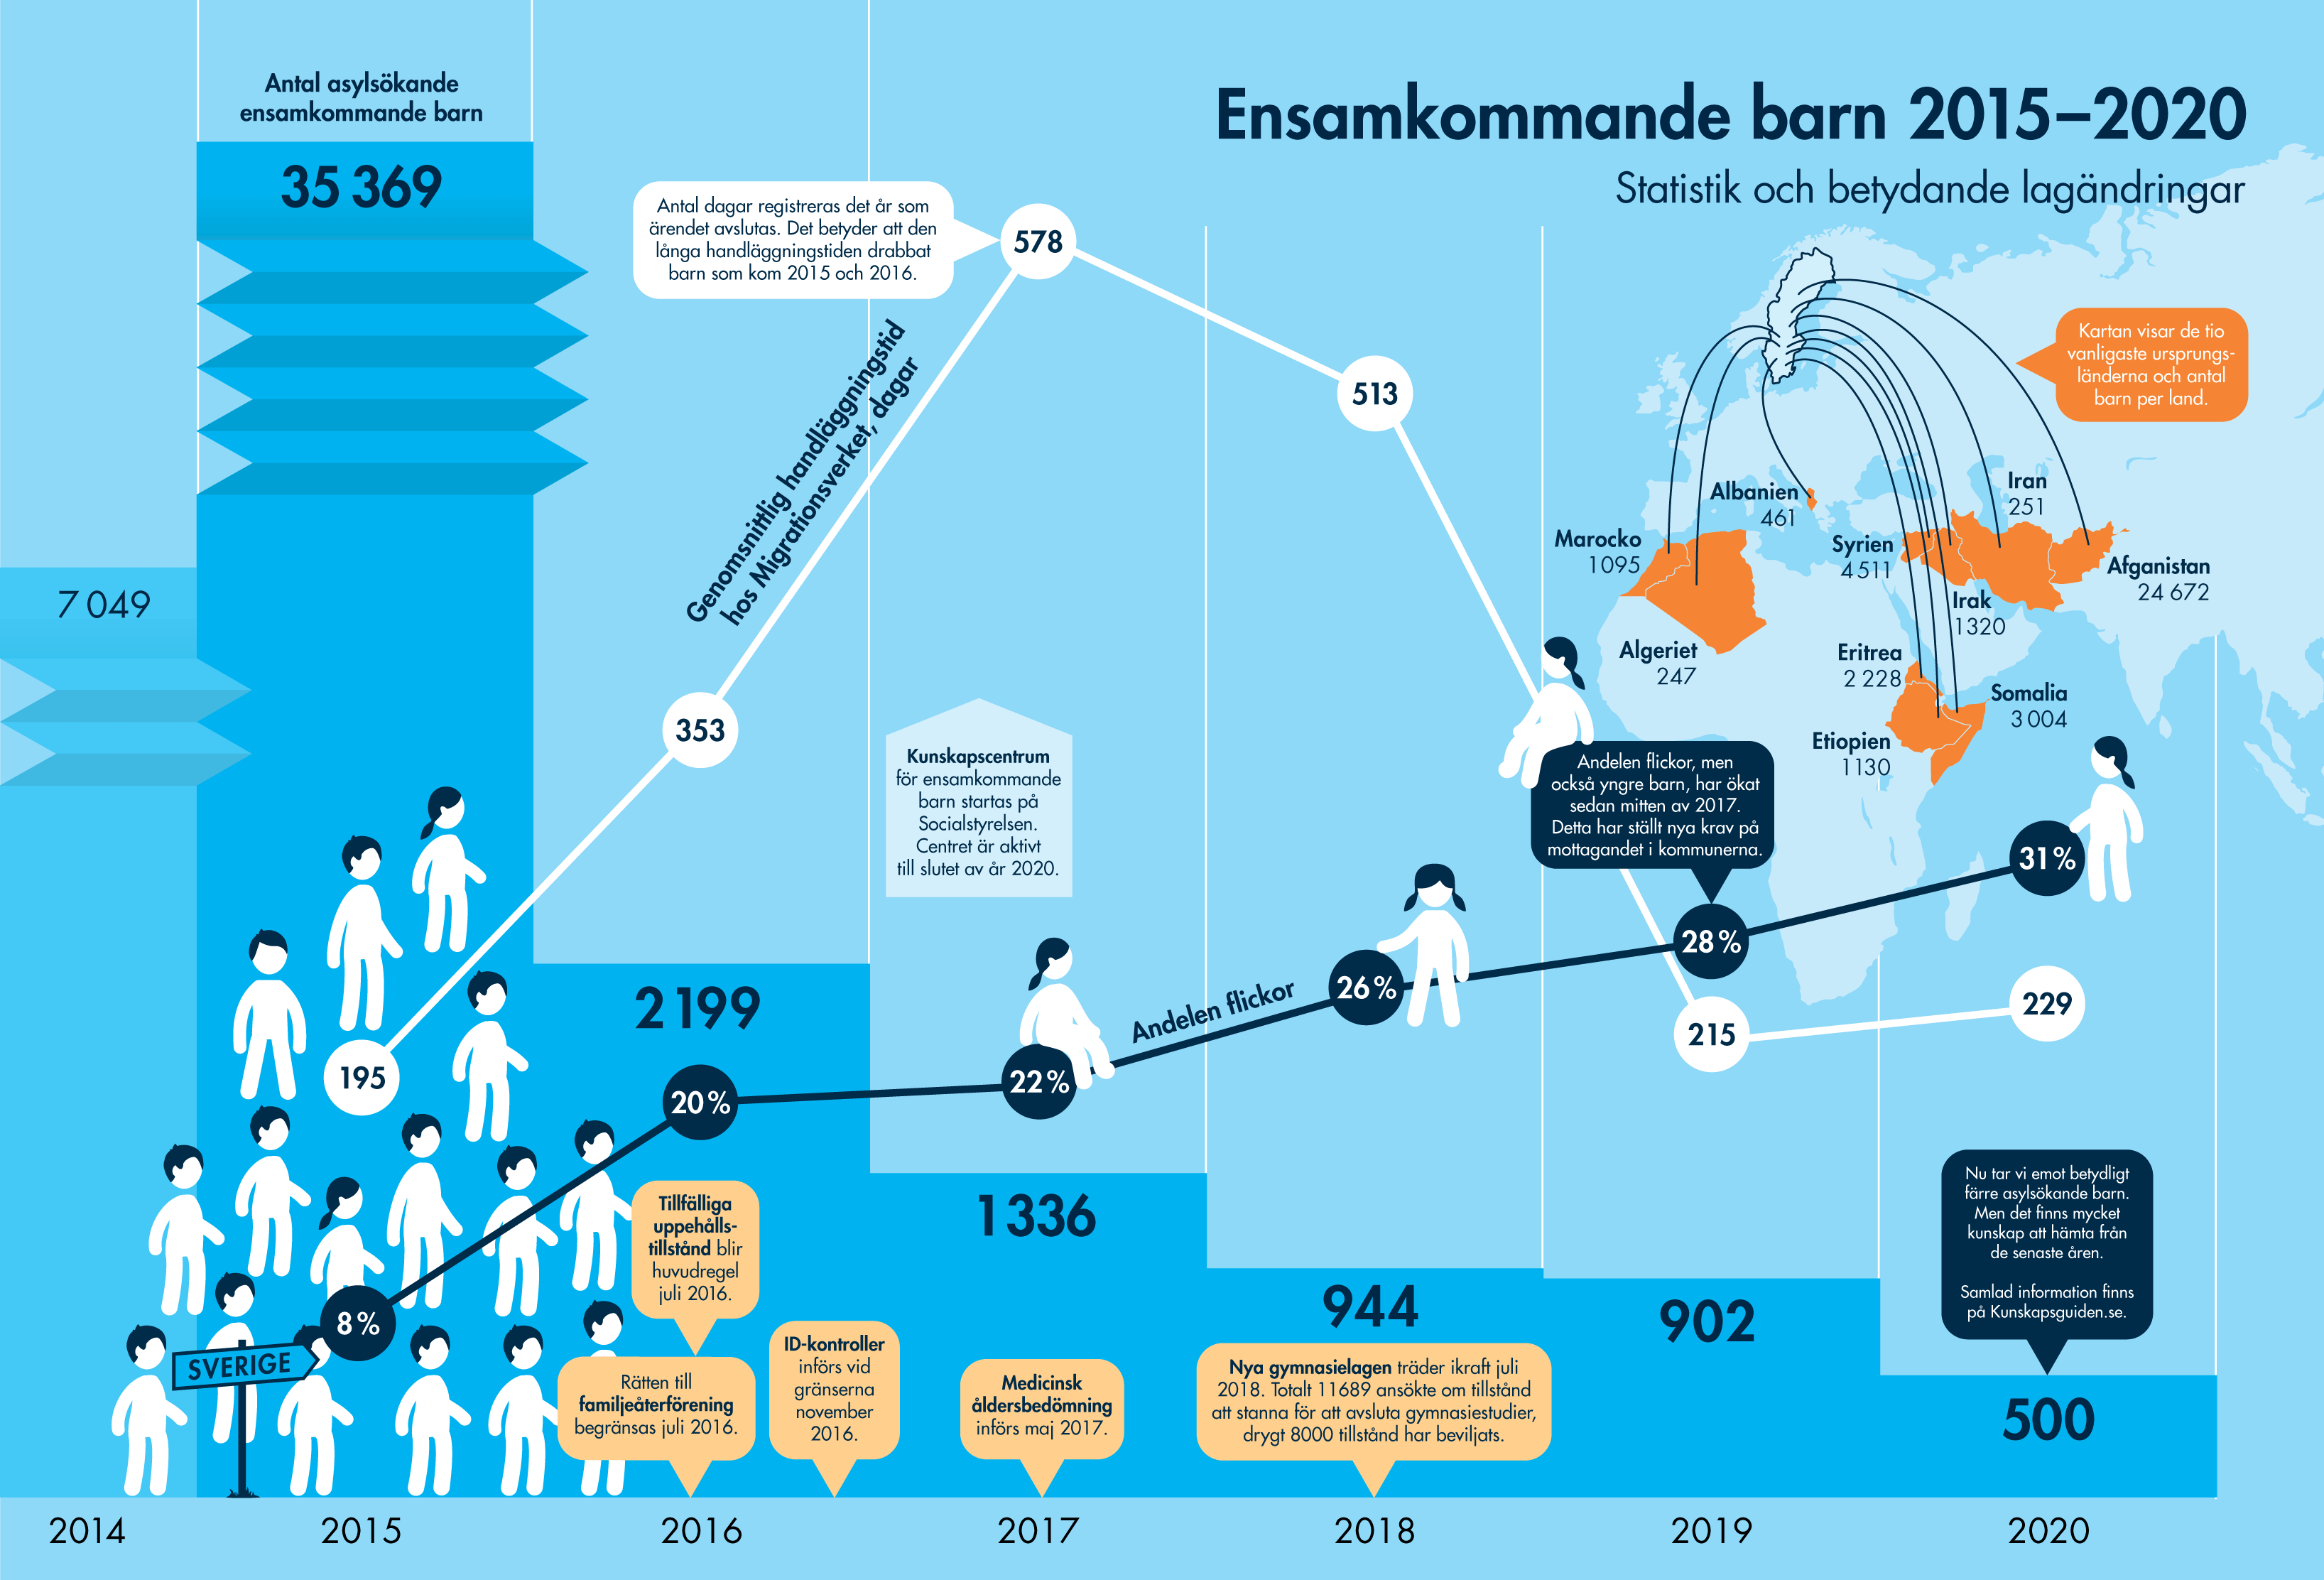 Bilden visar statistik om ensamkommande barn 2015-2020